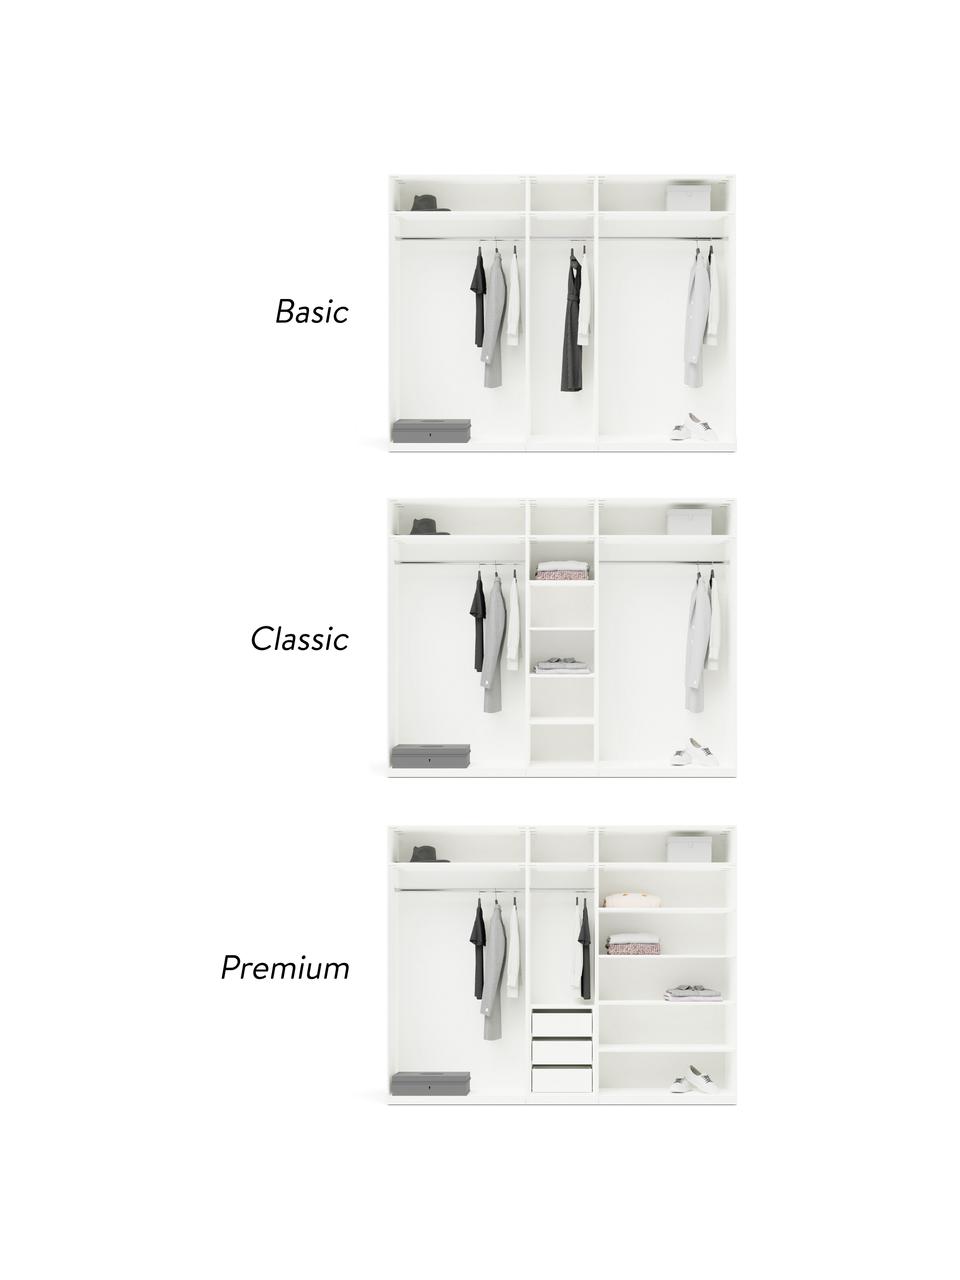 Modulaire draaideurkast Leon in wit, 250 cm breed, meerdere varianten, Frame: met melamine beklede spaa, Wit, Basis interieur, hoogte 200 cm